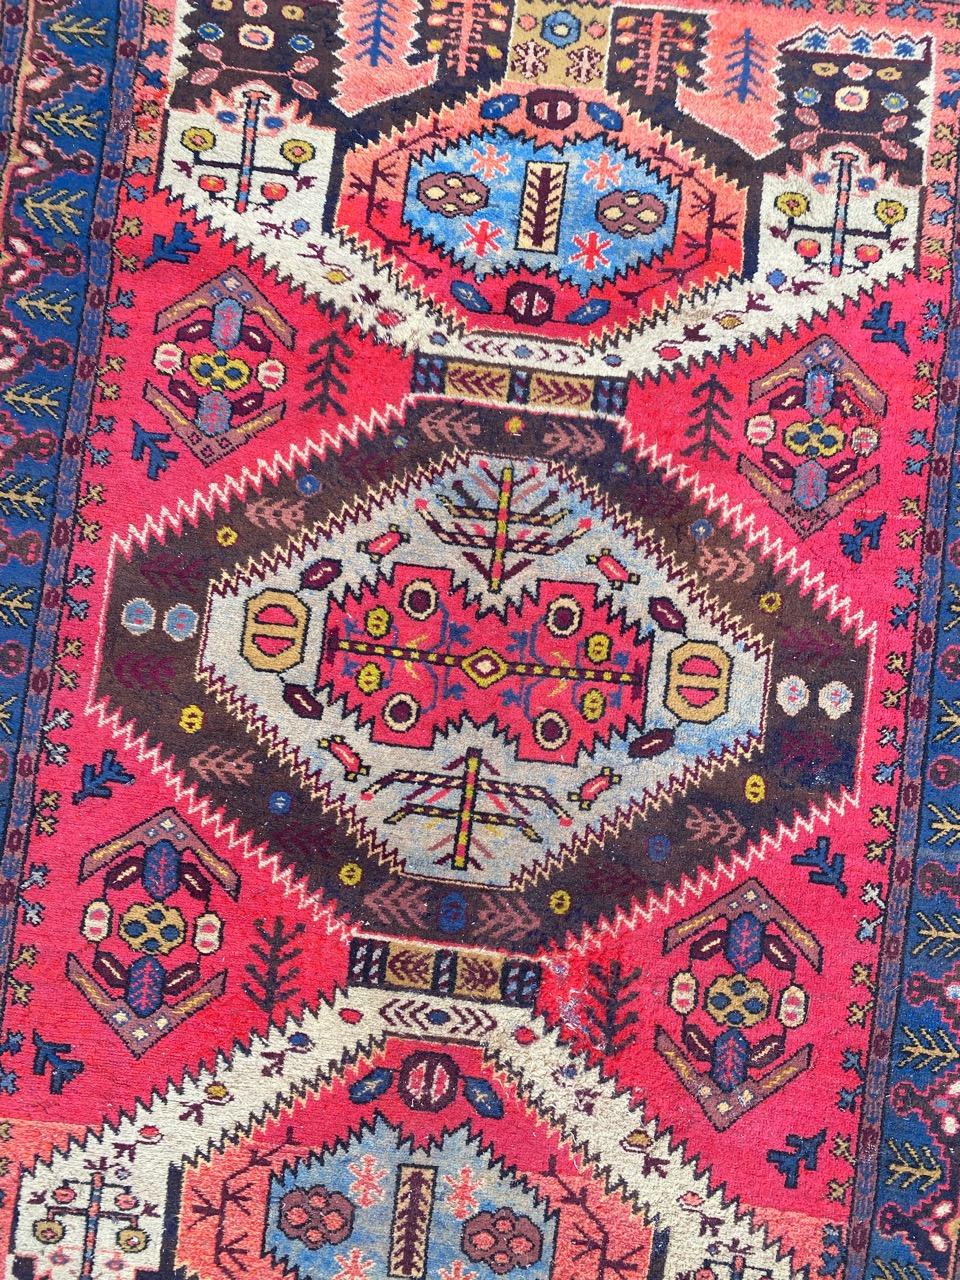 Schöner aserbaidschanischer Teppich aus der Mitte des Jahrhunderts mit kaukasischem Design und schönen Farben, komplett handgeknüpft mit Wollsamt auf Baumwollbasis.

✨✨✨
